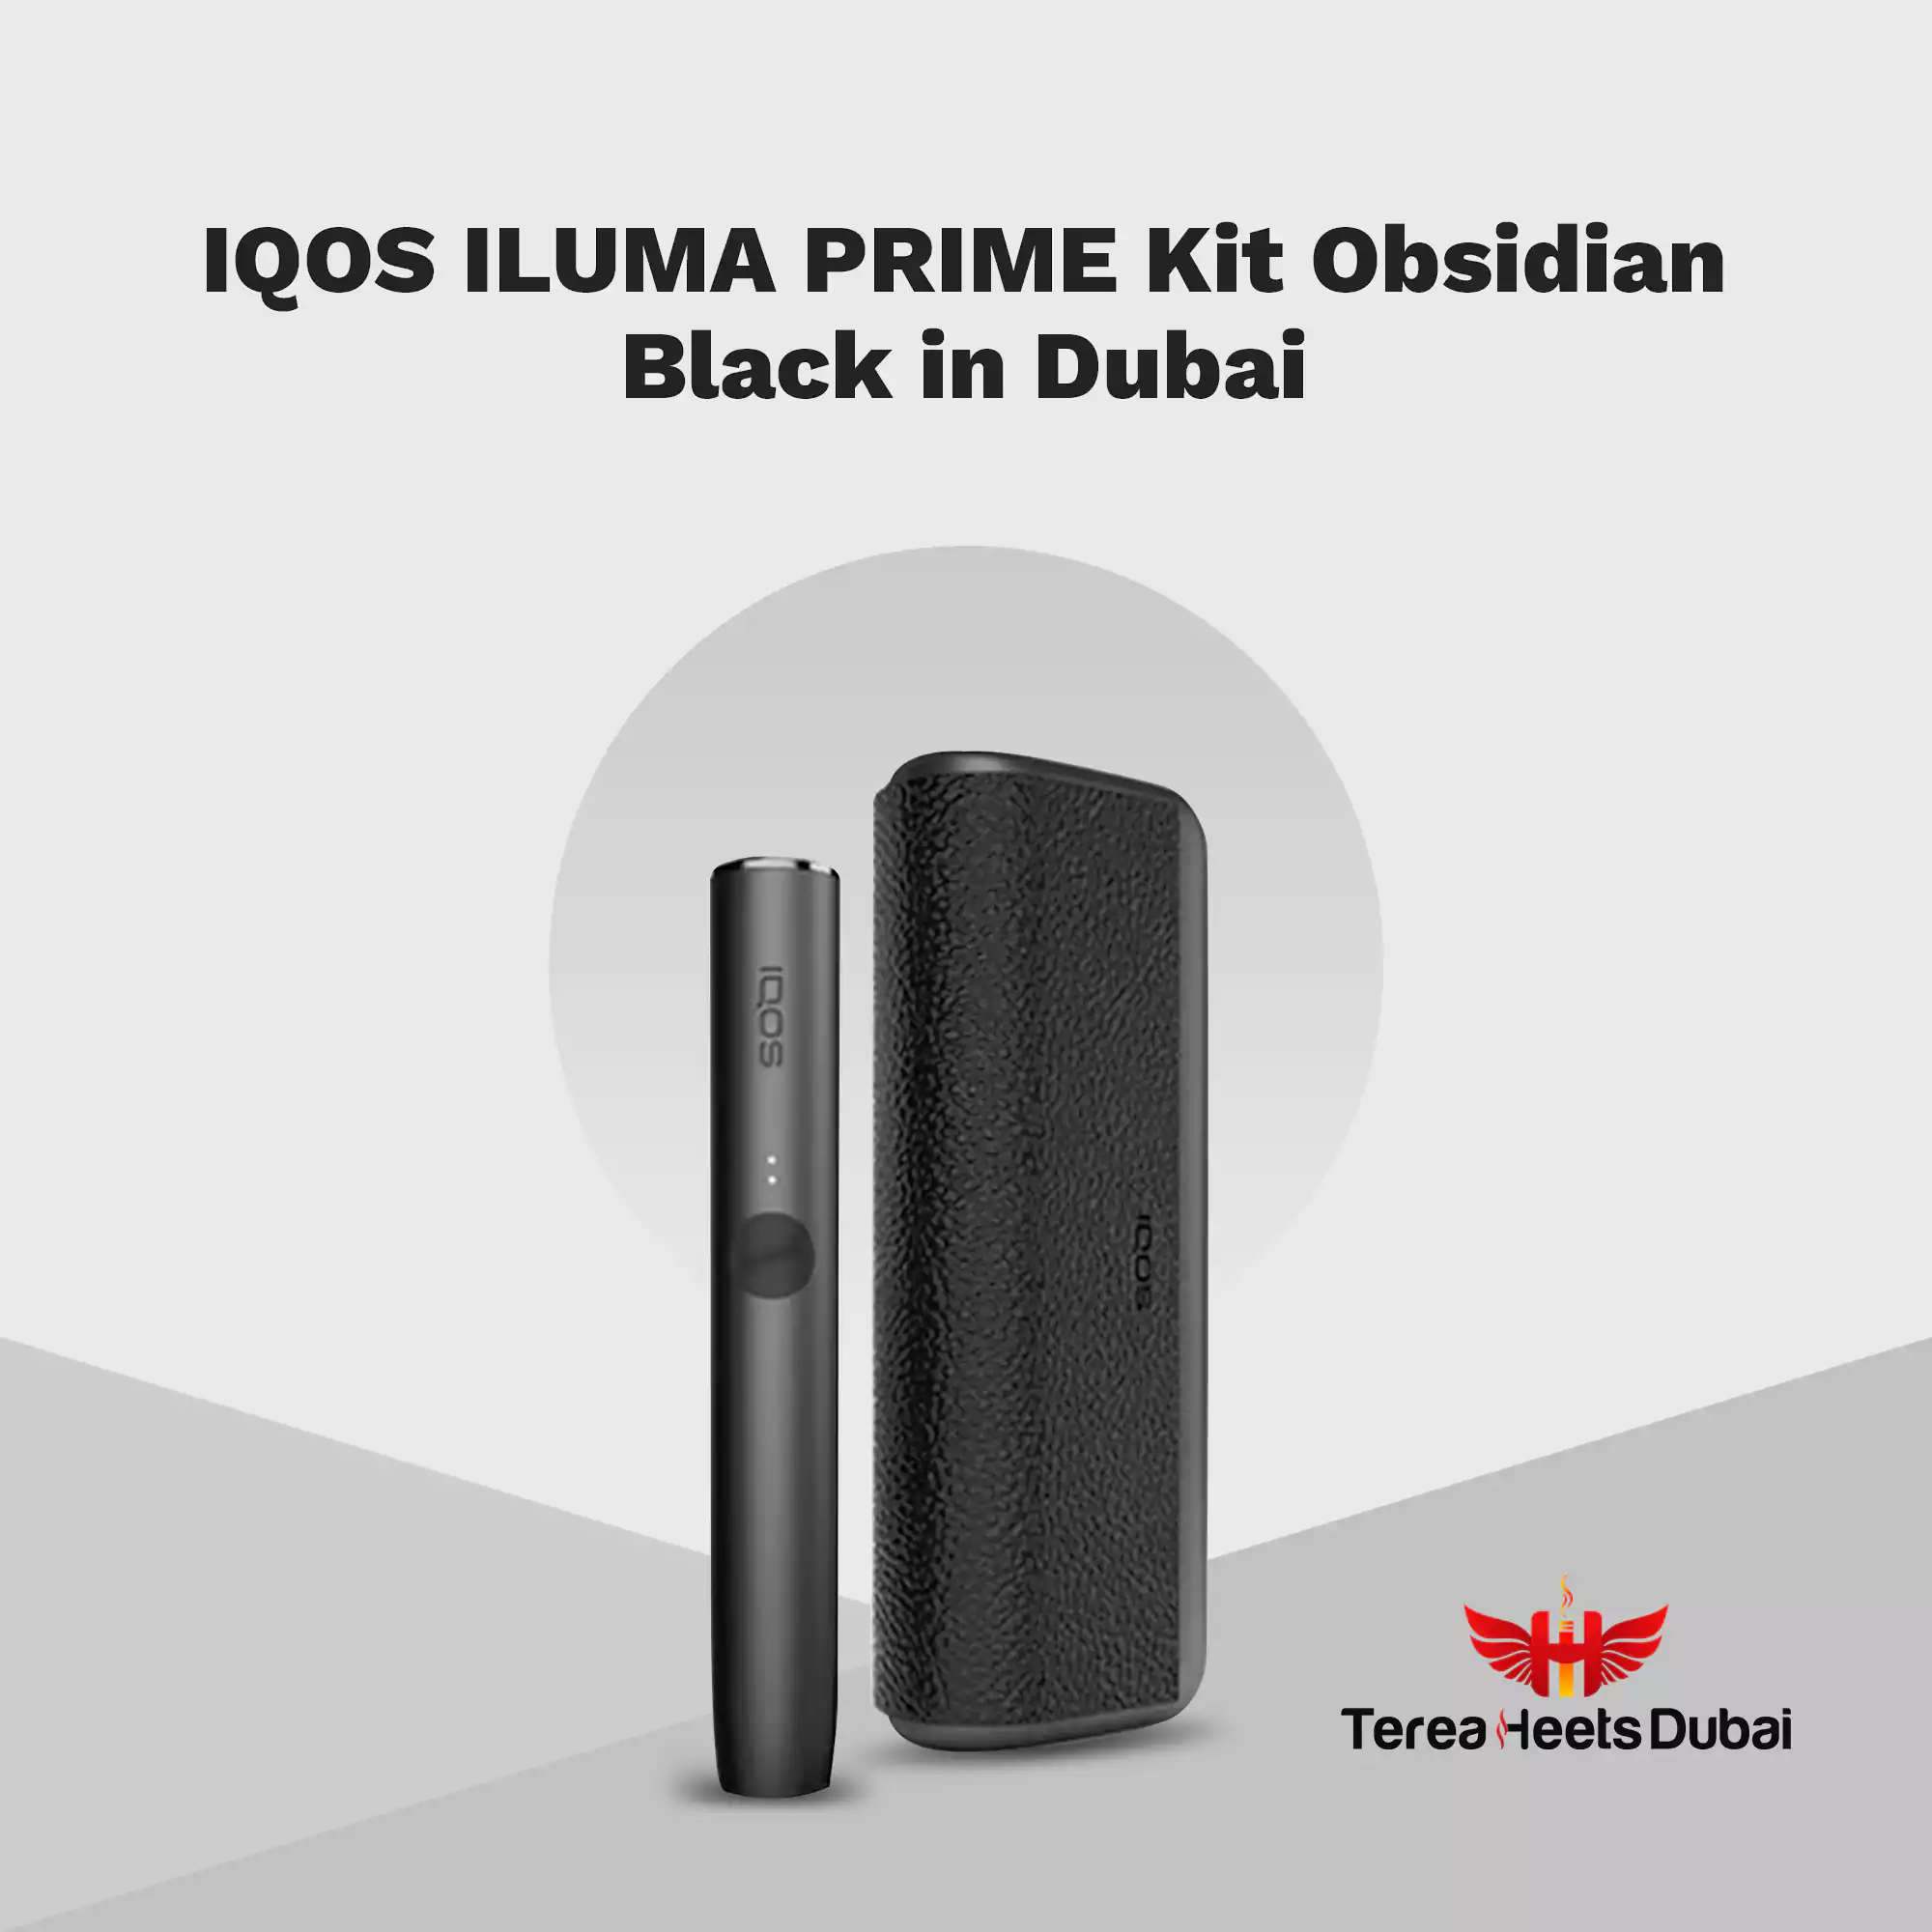 IQOS ILUMA PRIME Obsidian Black in Dubai UAE